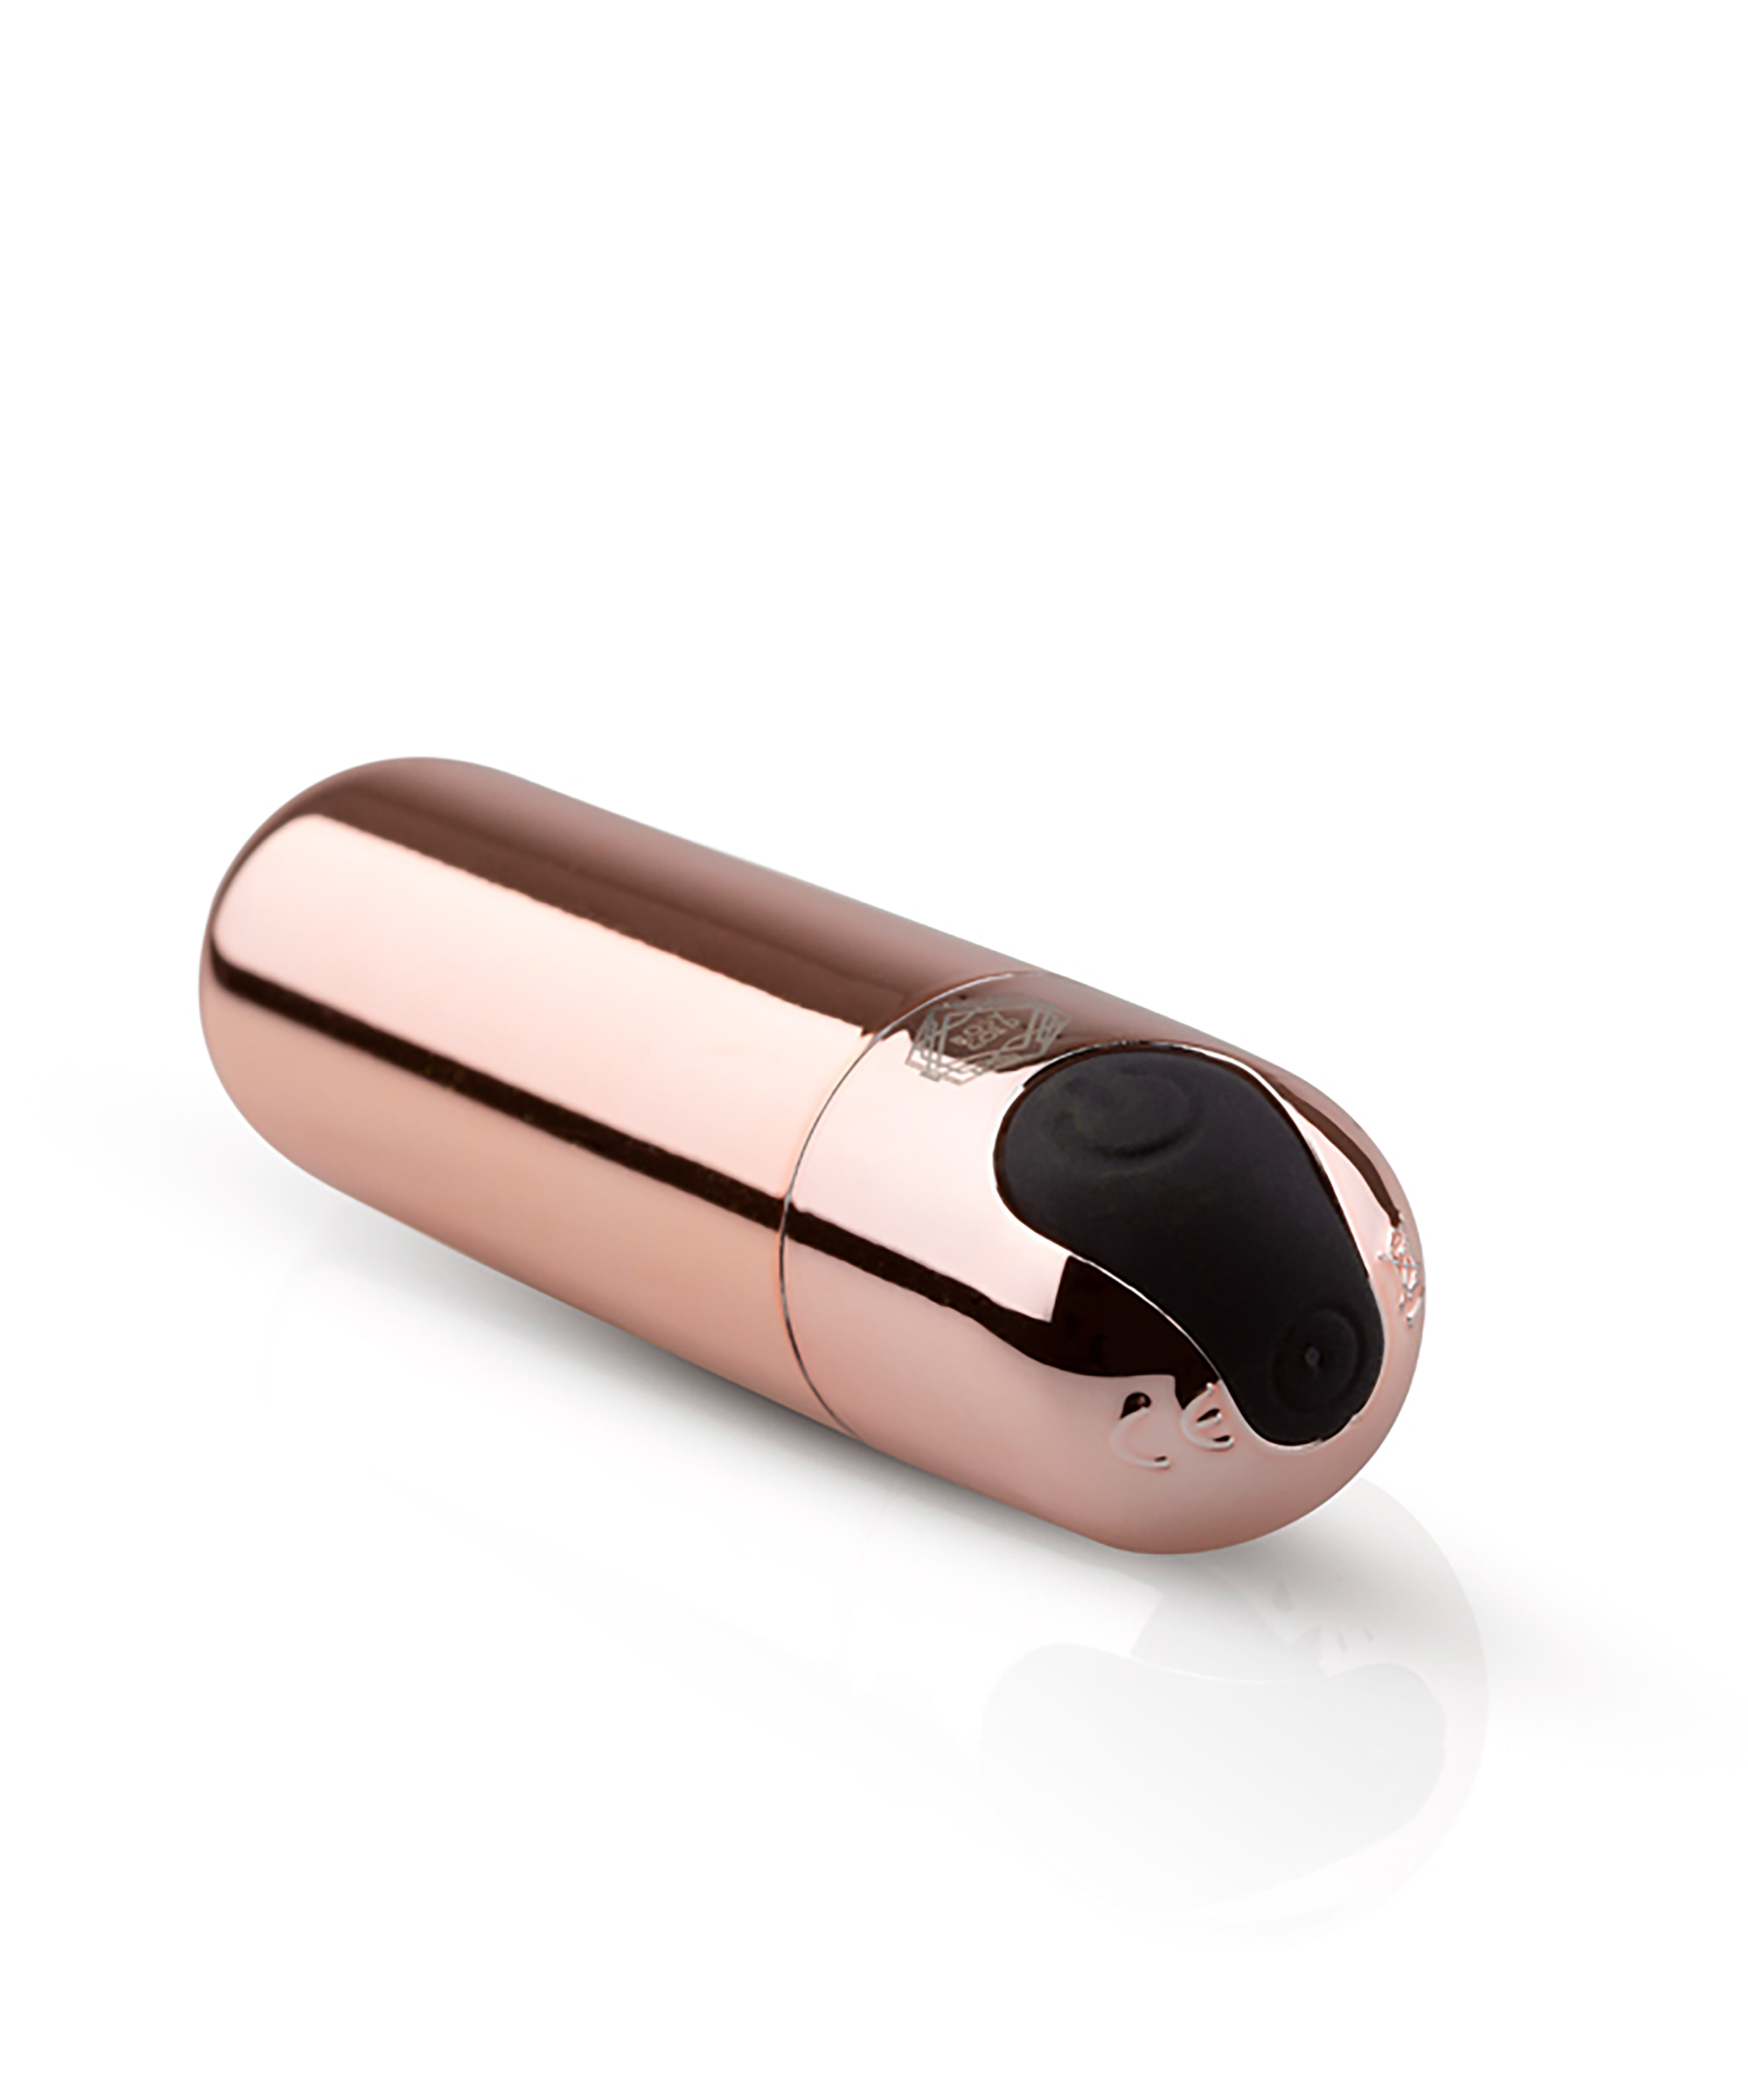 Rosy Gold Nouveau Bullet Vibrator, Roze, main